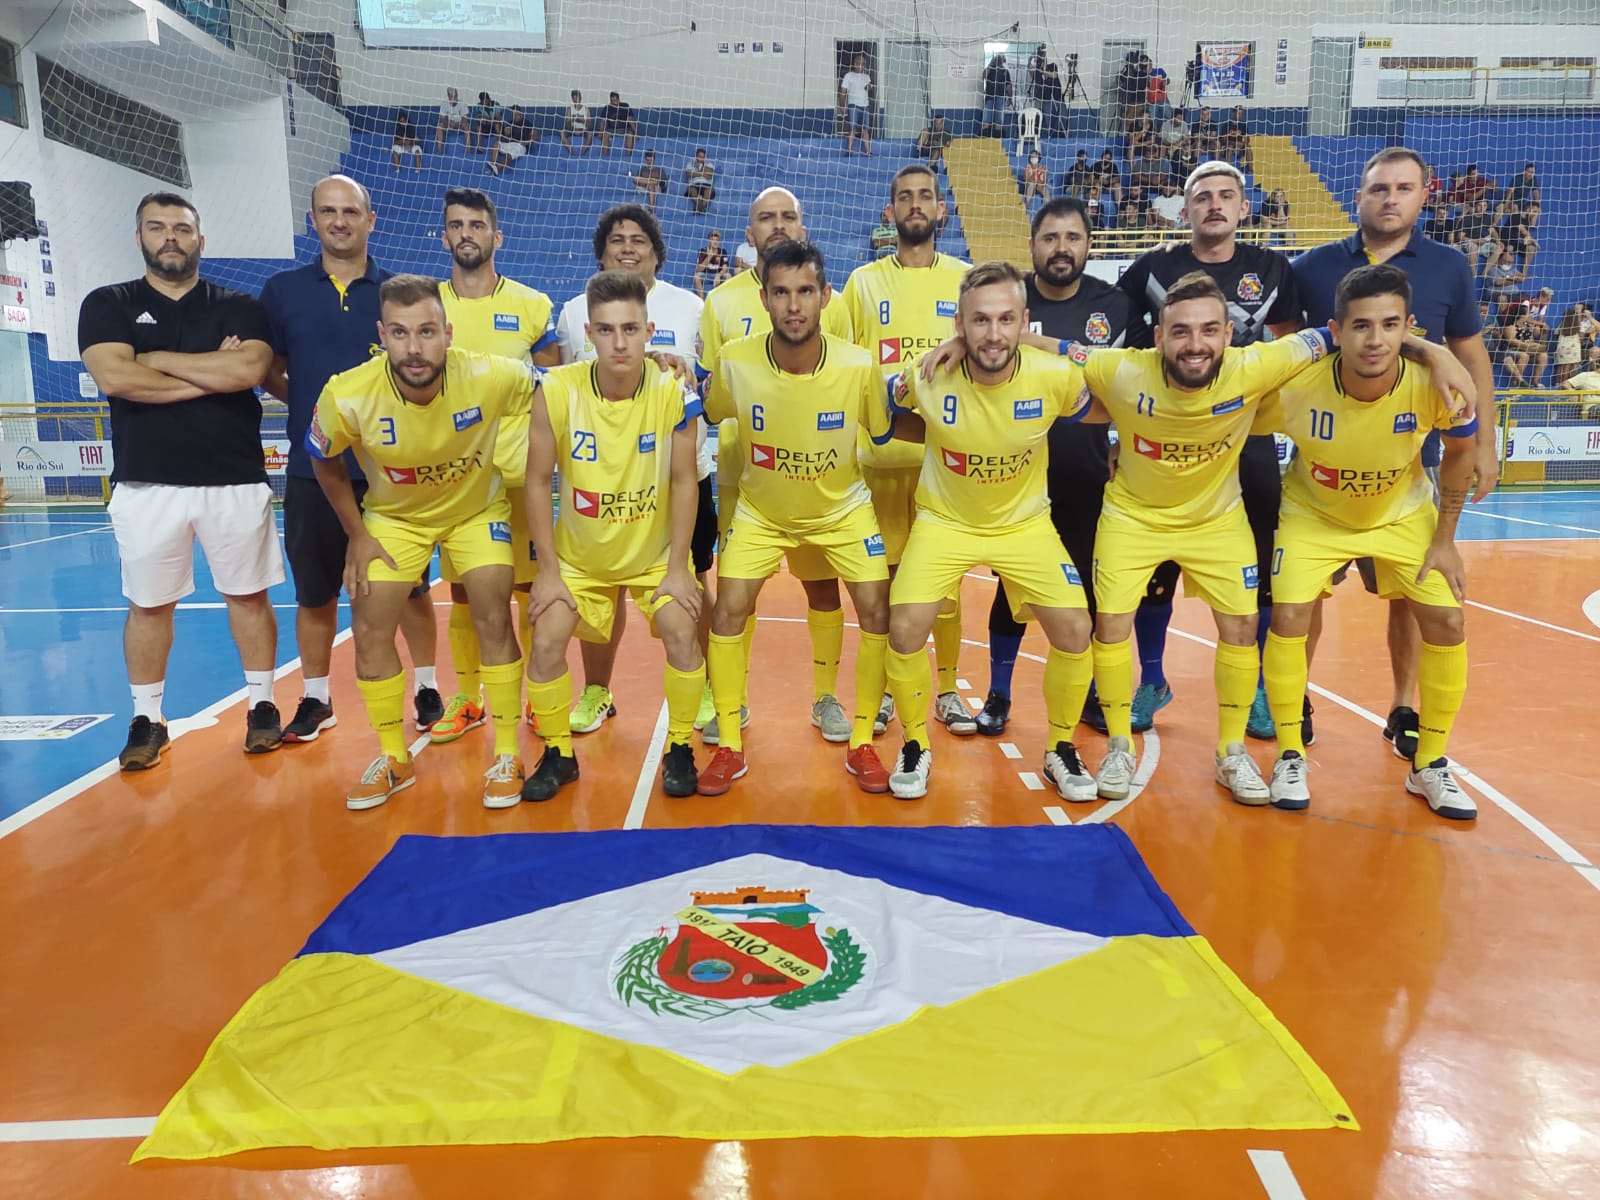 Torcida do Taió Futsal deve comparecer em peso para decisão contra o Moitas no Torneio de Verão